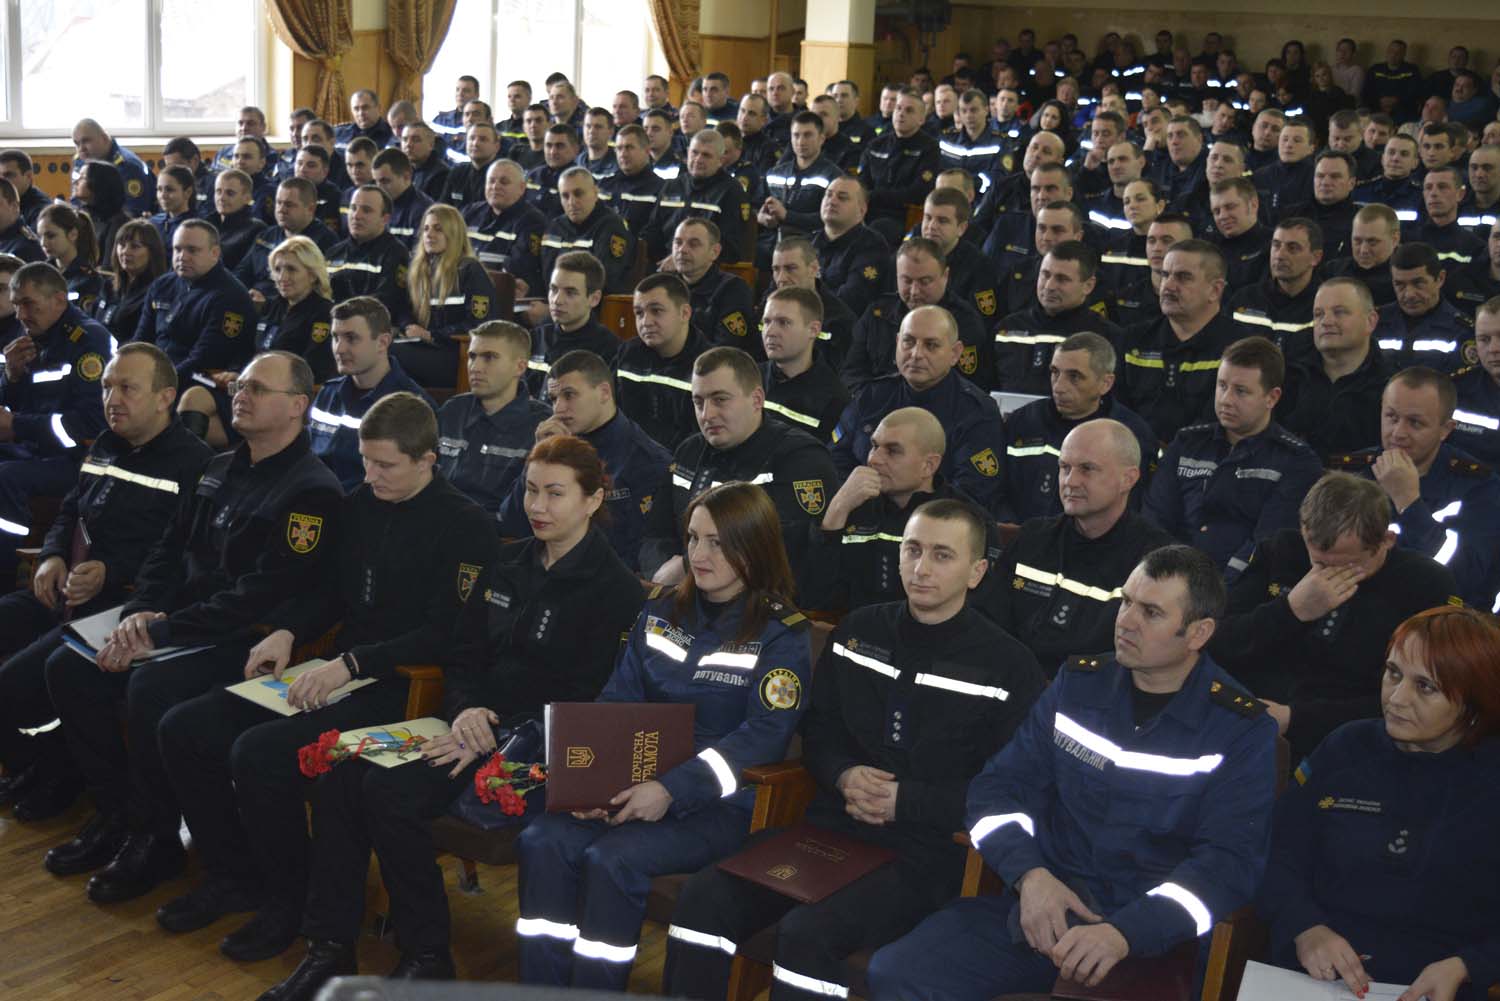 Сьогодні, 18 січня, в Ужгороді у приміщенні Закарпатської обласної філармонії відбулася нарада за підсумками роботи Управління ДСНС області та підпорядкованих підрозділів у 2018 році.